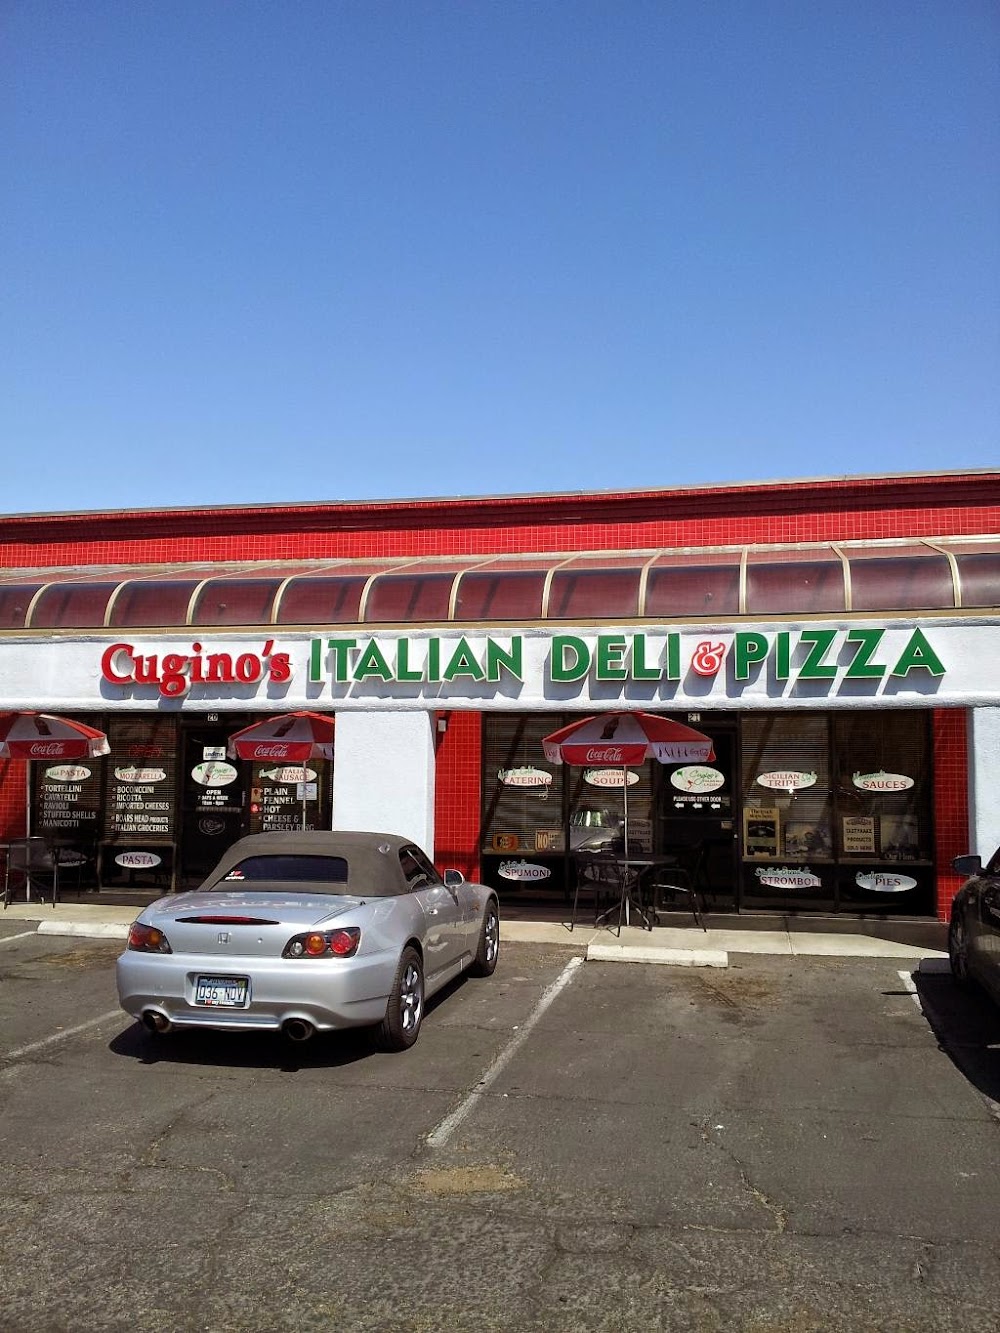 Cugino’s Italian Deli & Pizzeria